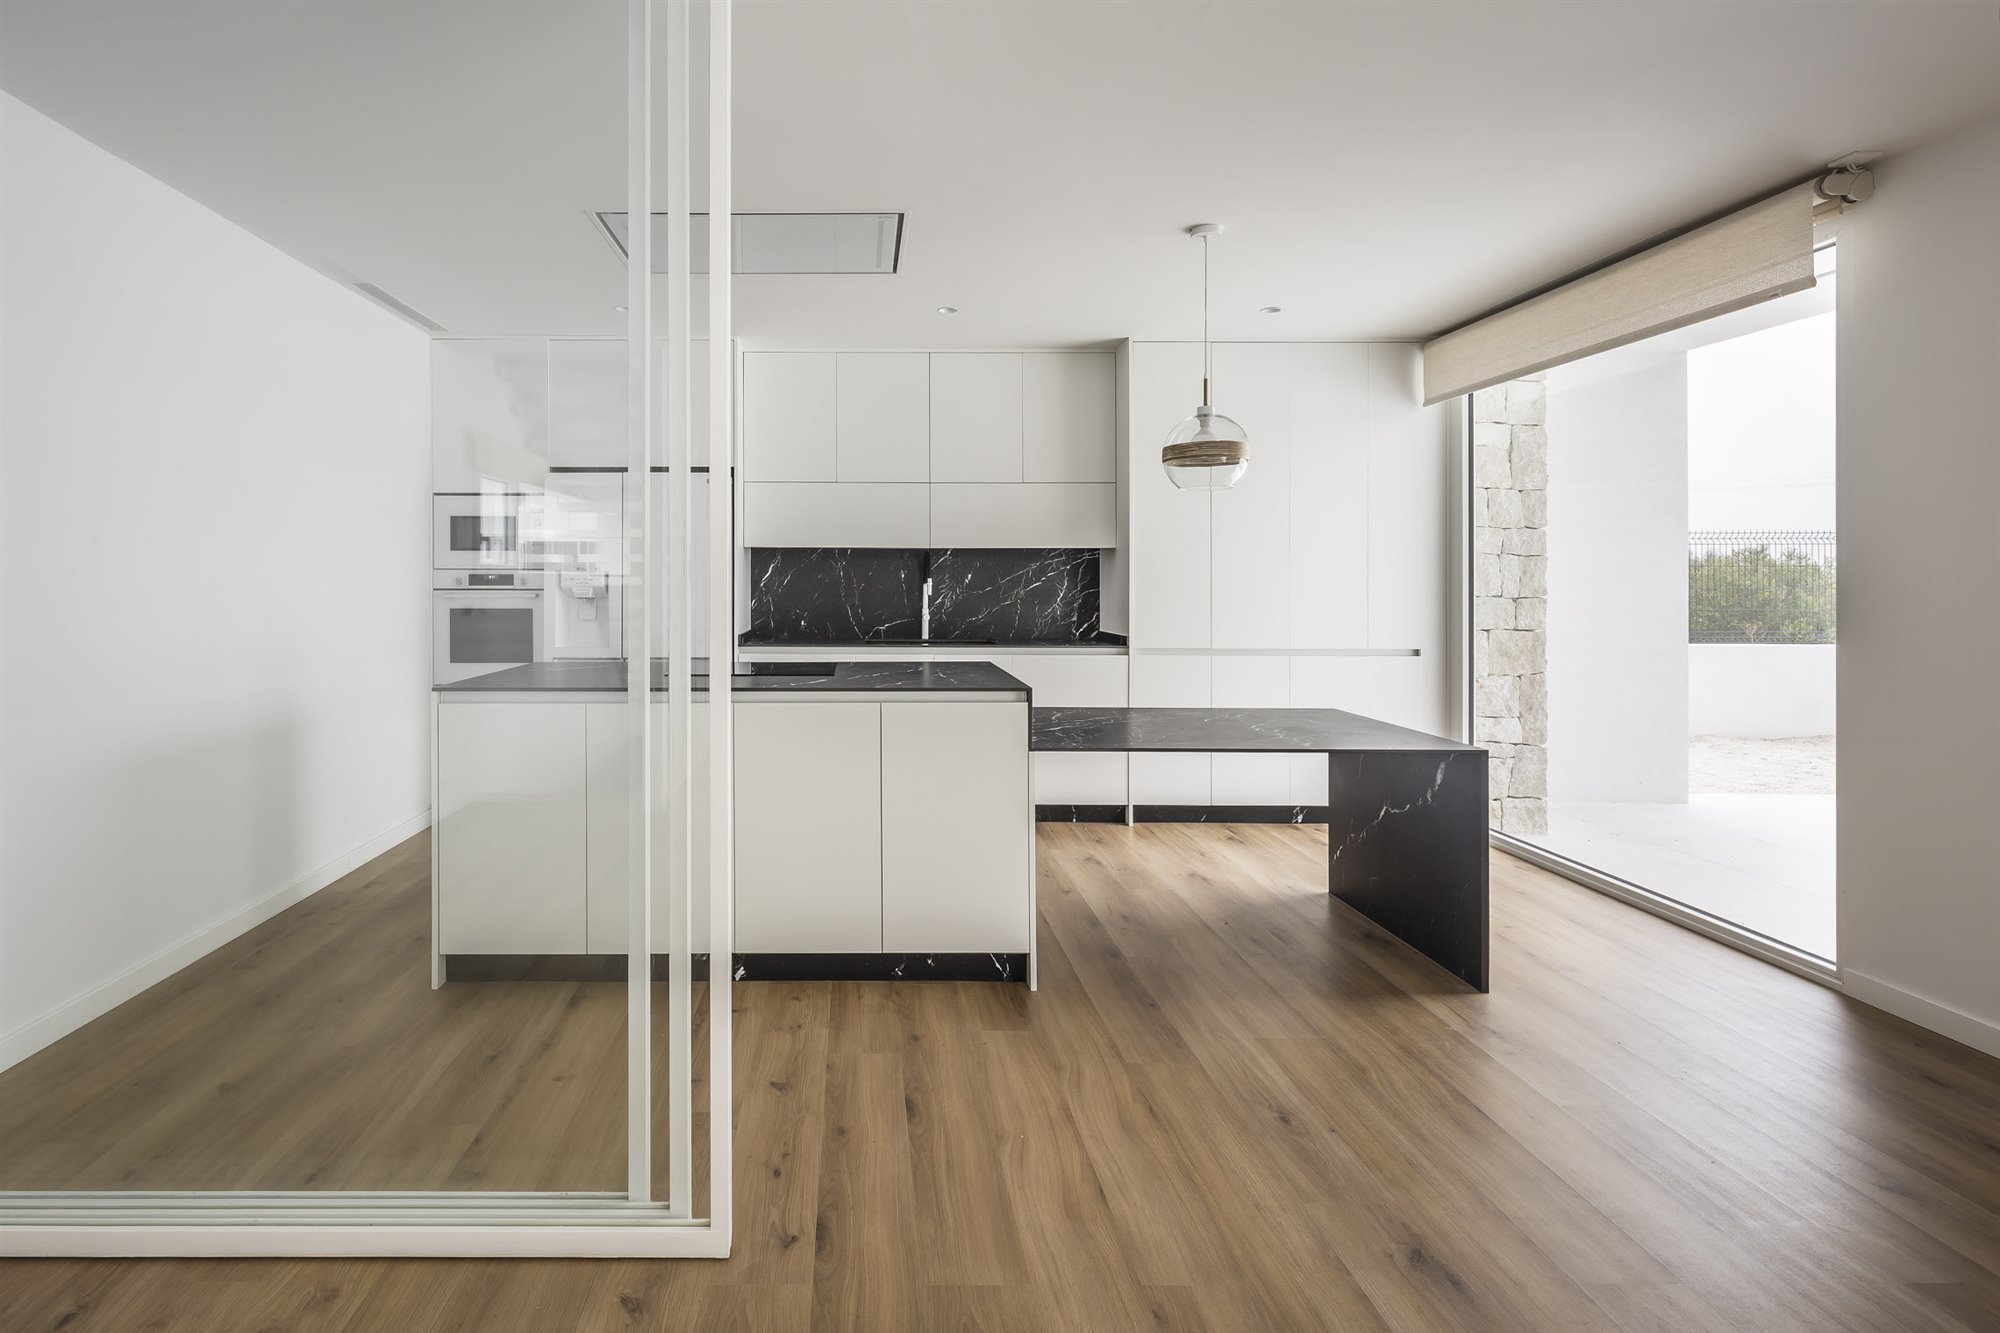 Casa moderna con fachada en blanco y negro en Valencia cocina